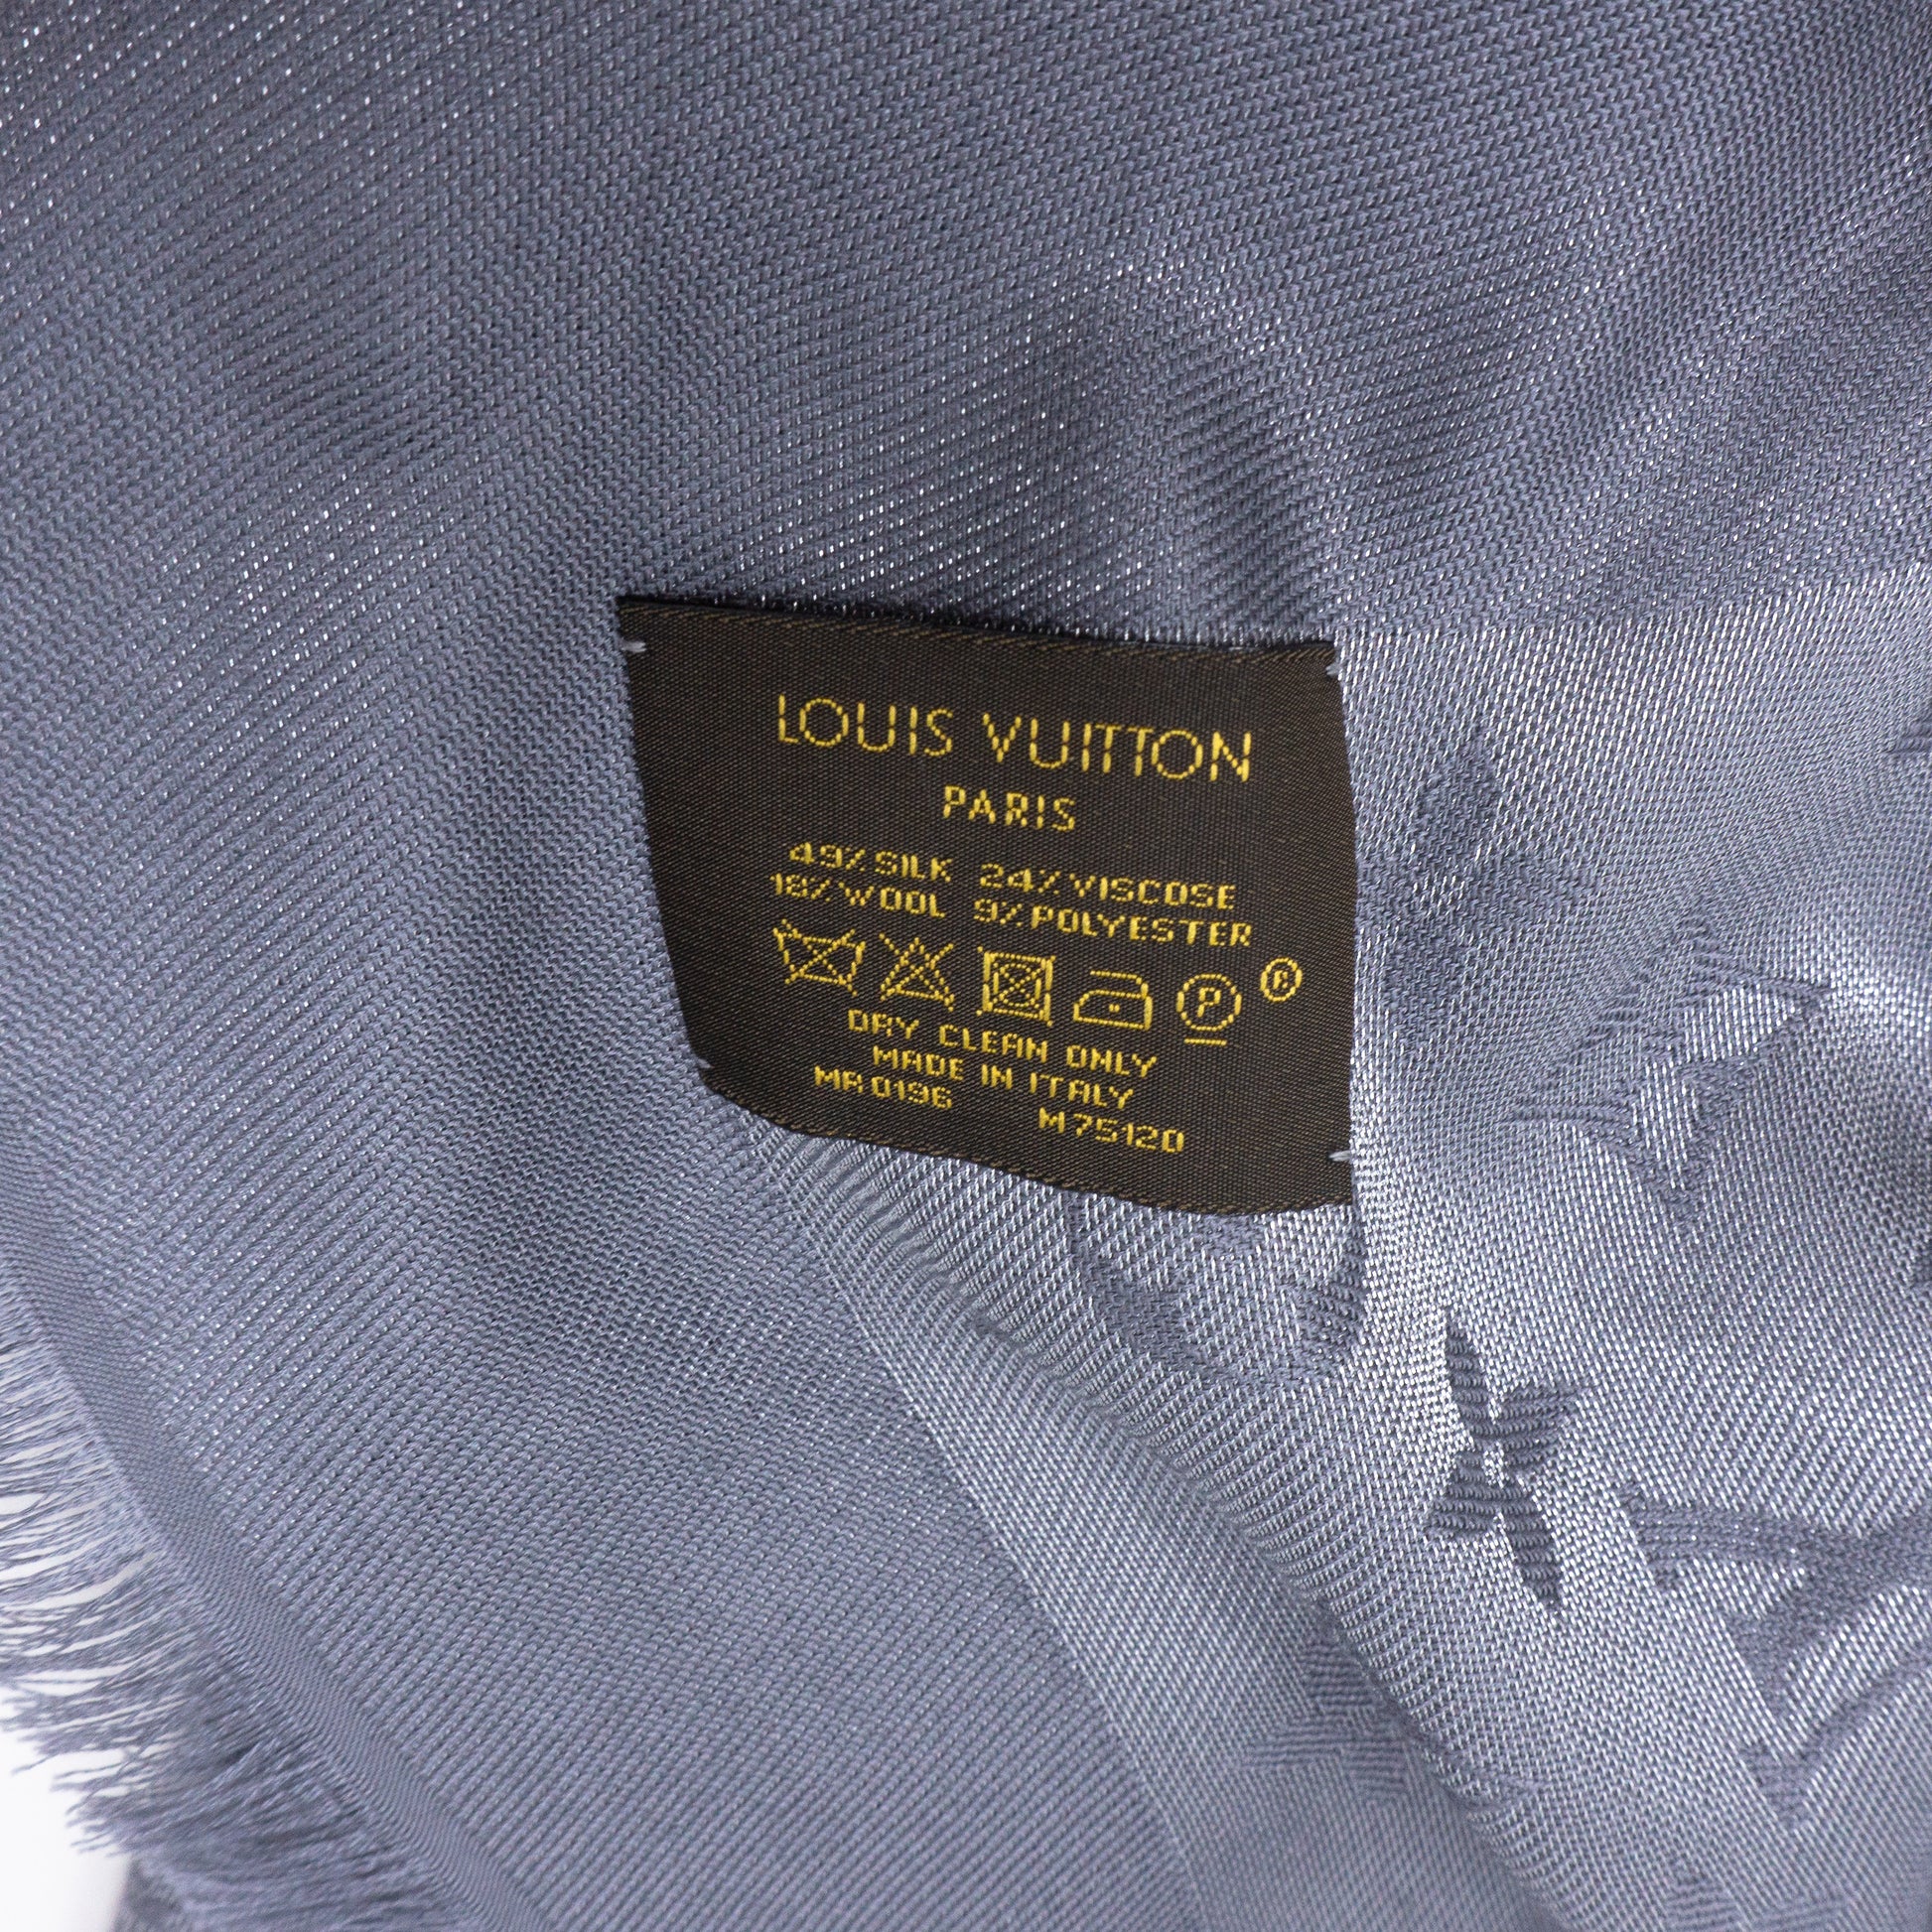 Louis Vuitton, Accessories, Nwt Louis Vuitton Monogram Shine Shawl